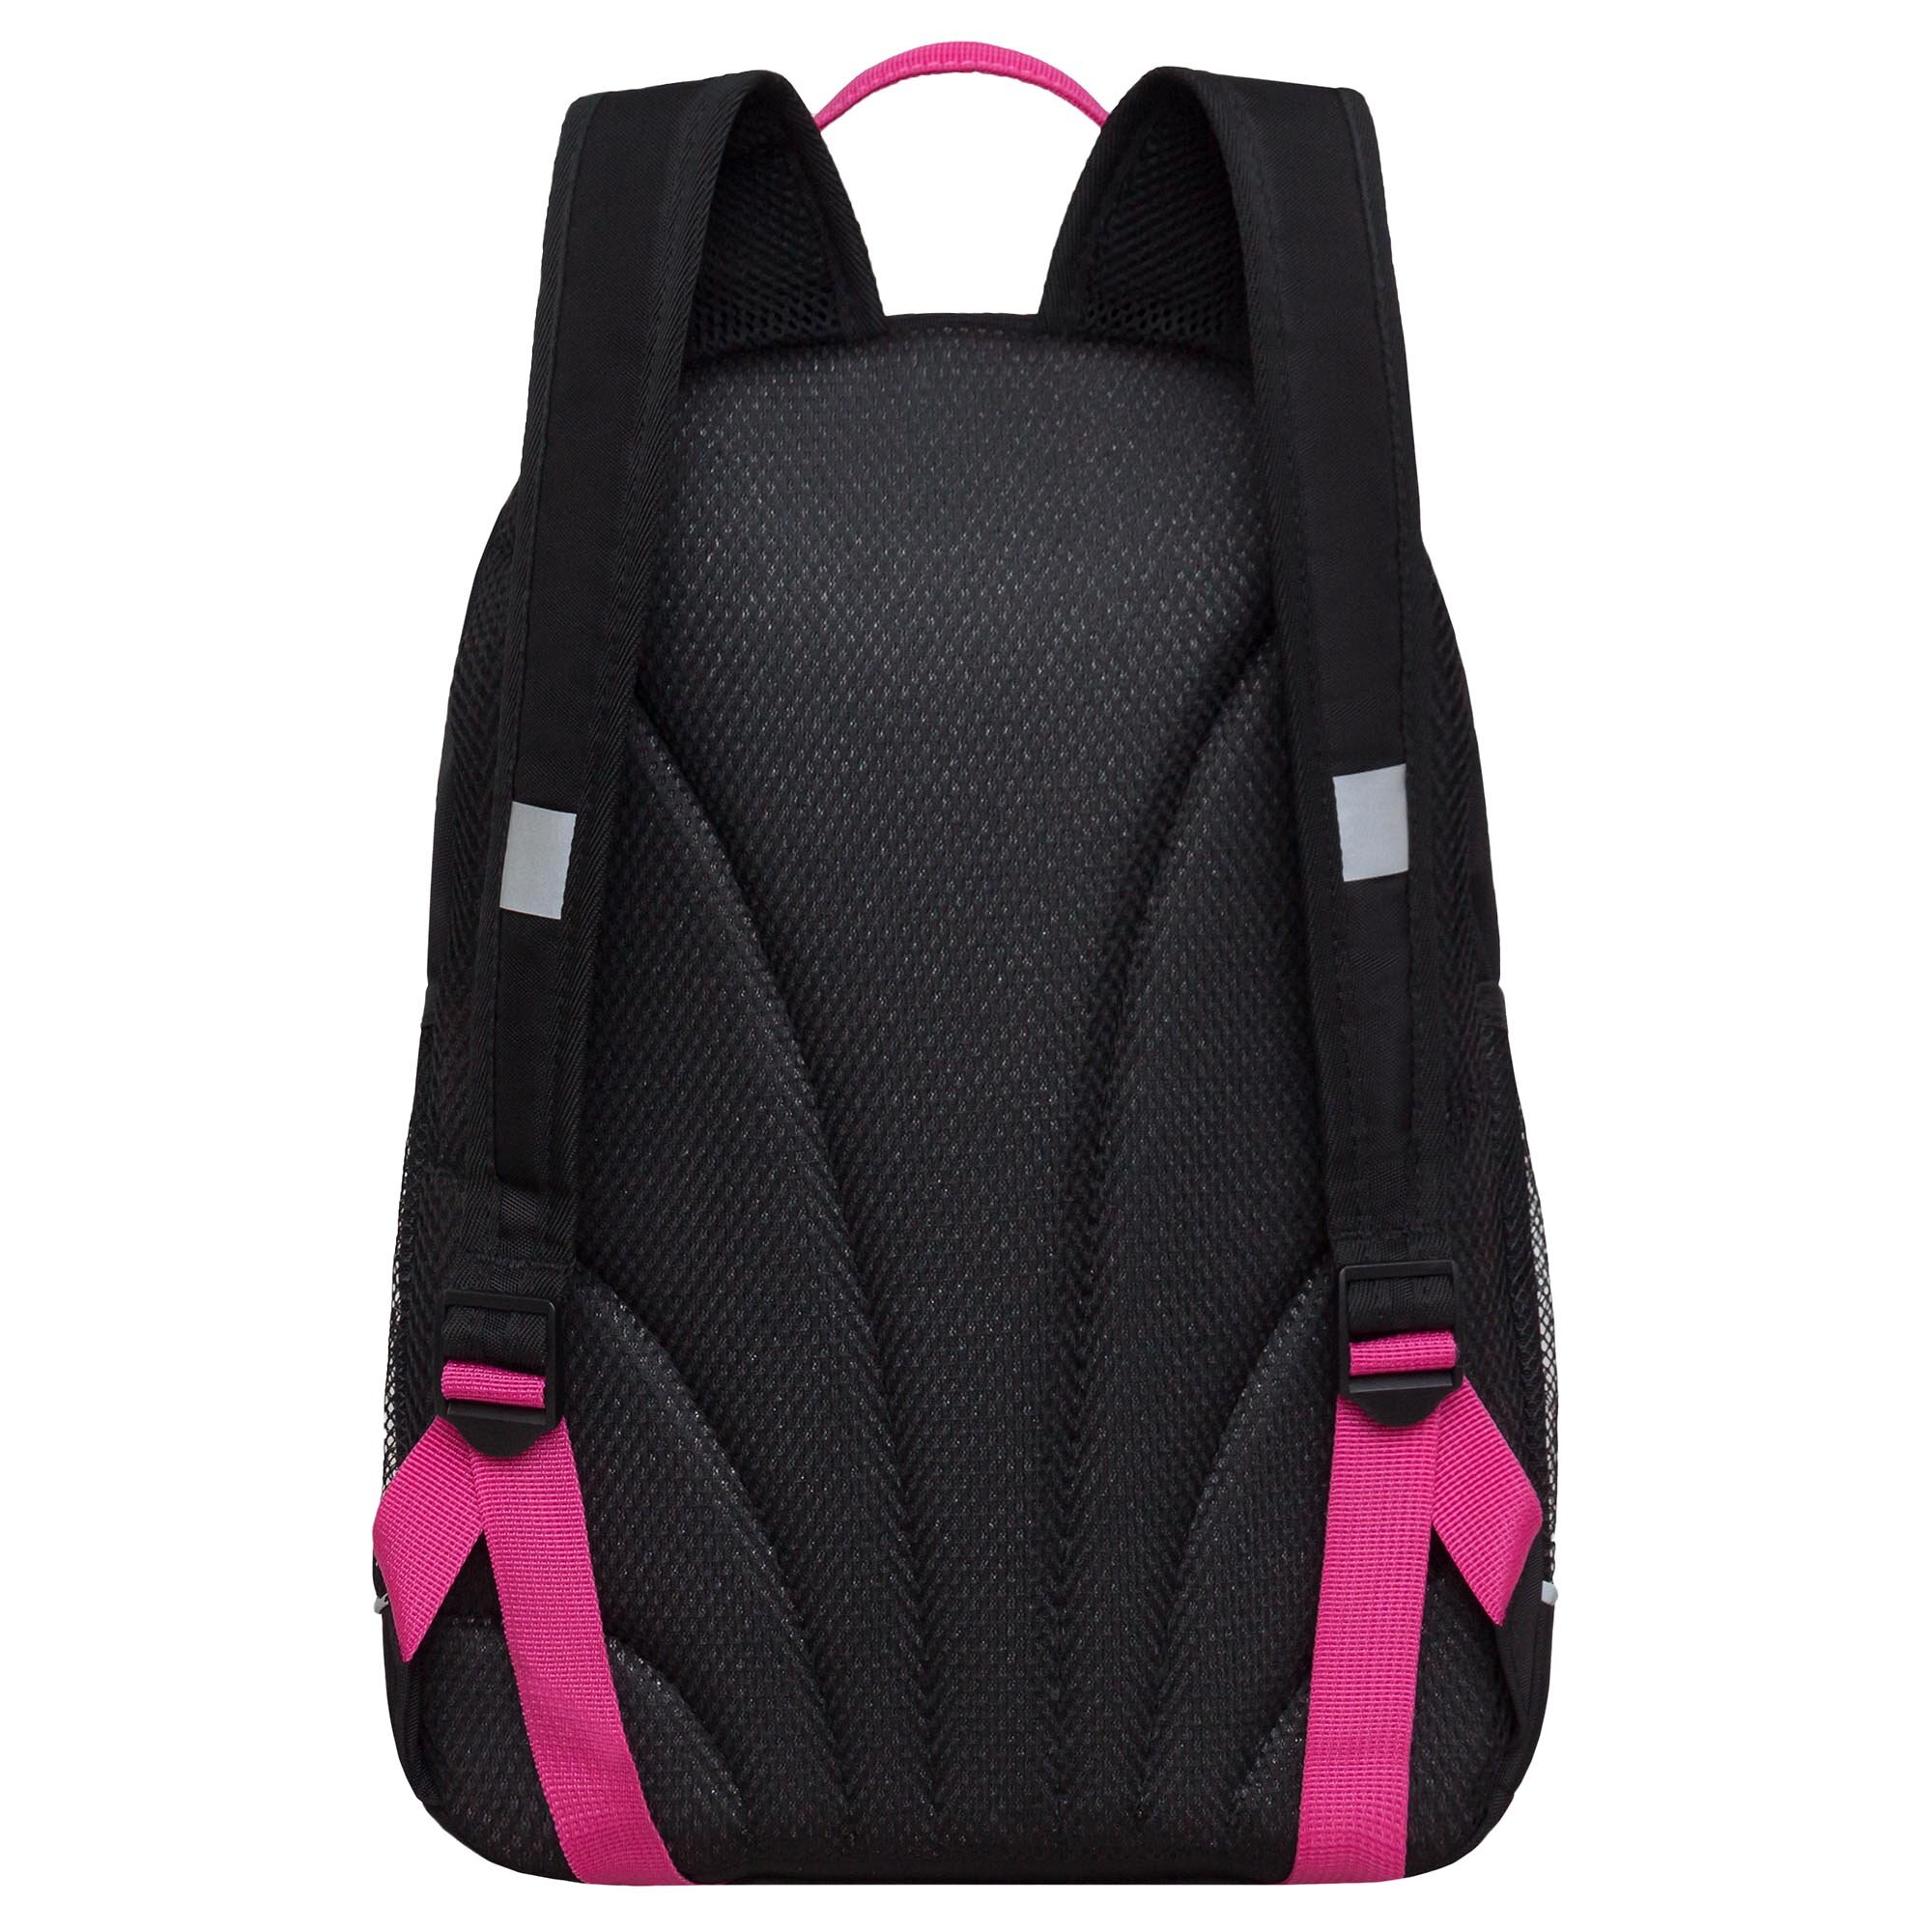 Рюкзак школьный GRIZZLY с карманом для ноутбука 13", жесткой спинкой, двумя отделениями, для девочки RG-463-1/2